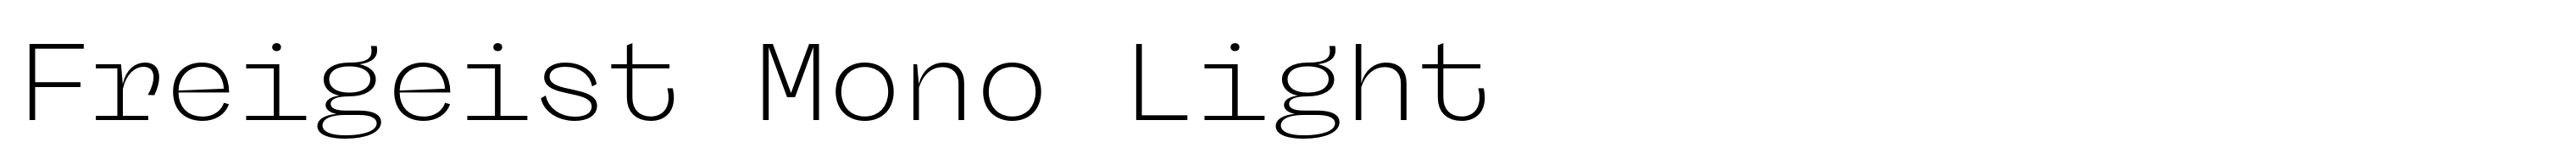 Freigeist Mono Light